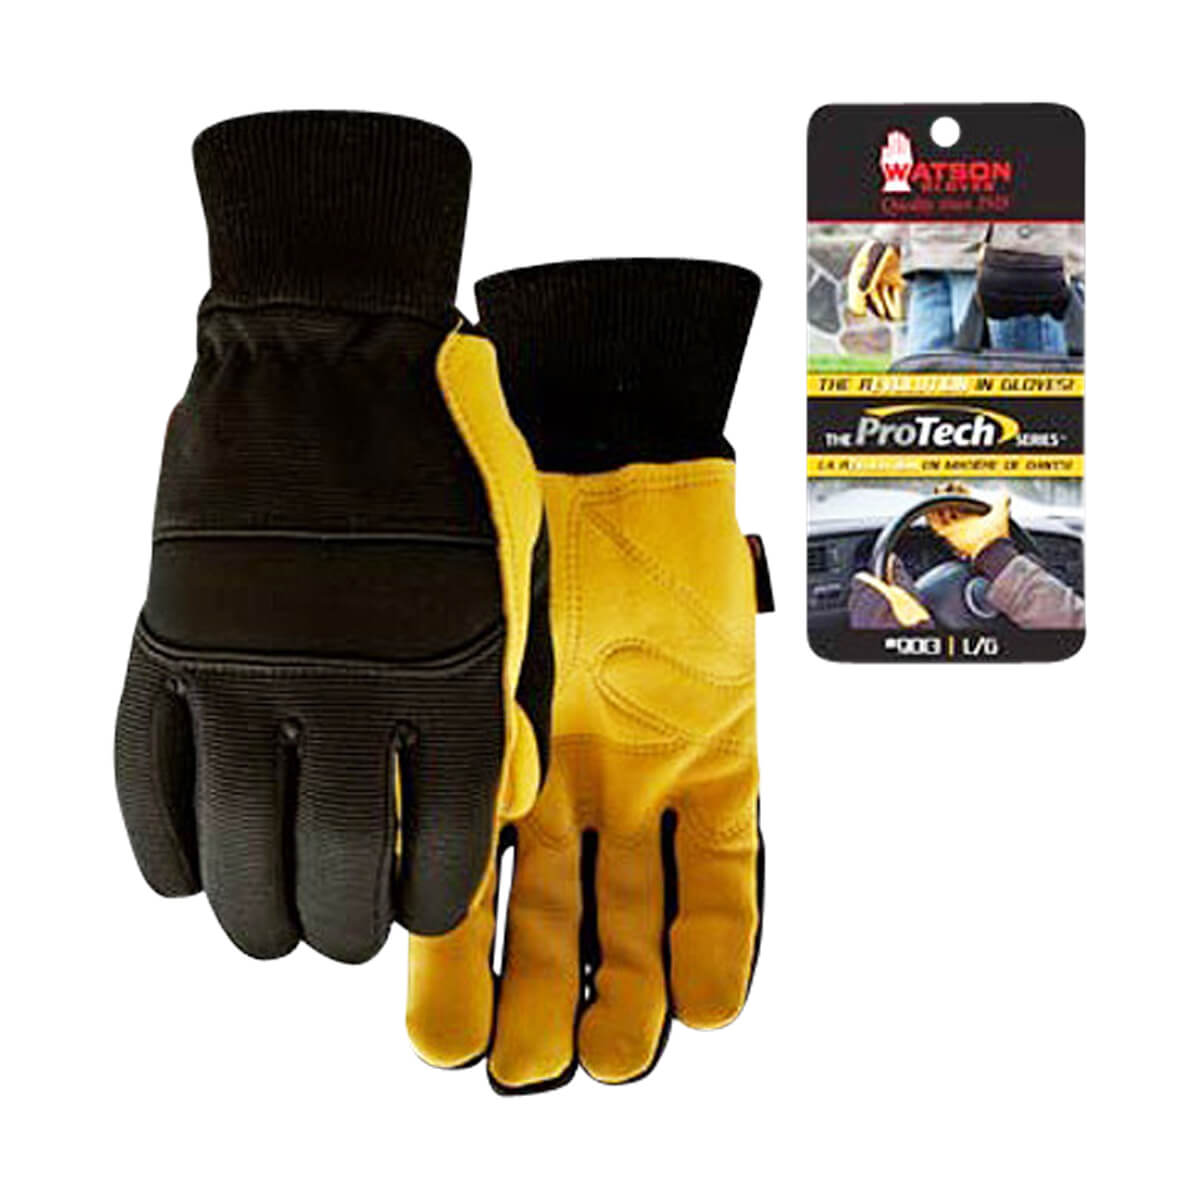 Protech Knit Wrist Gloves